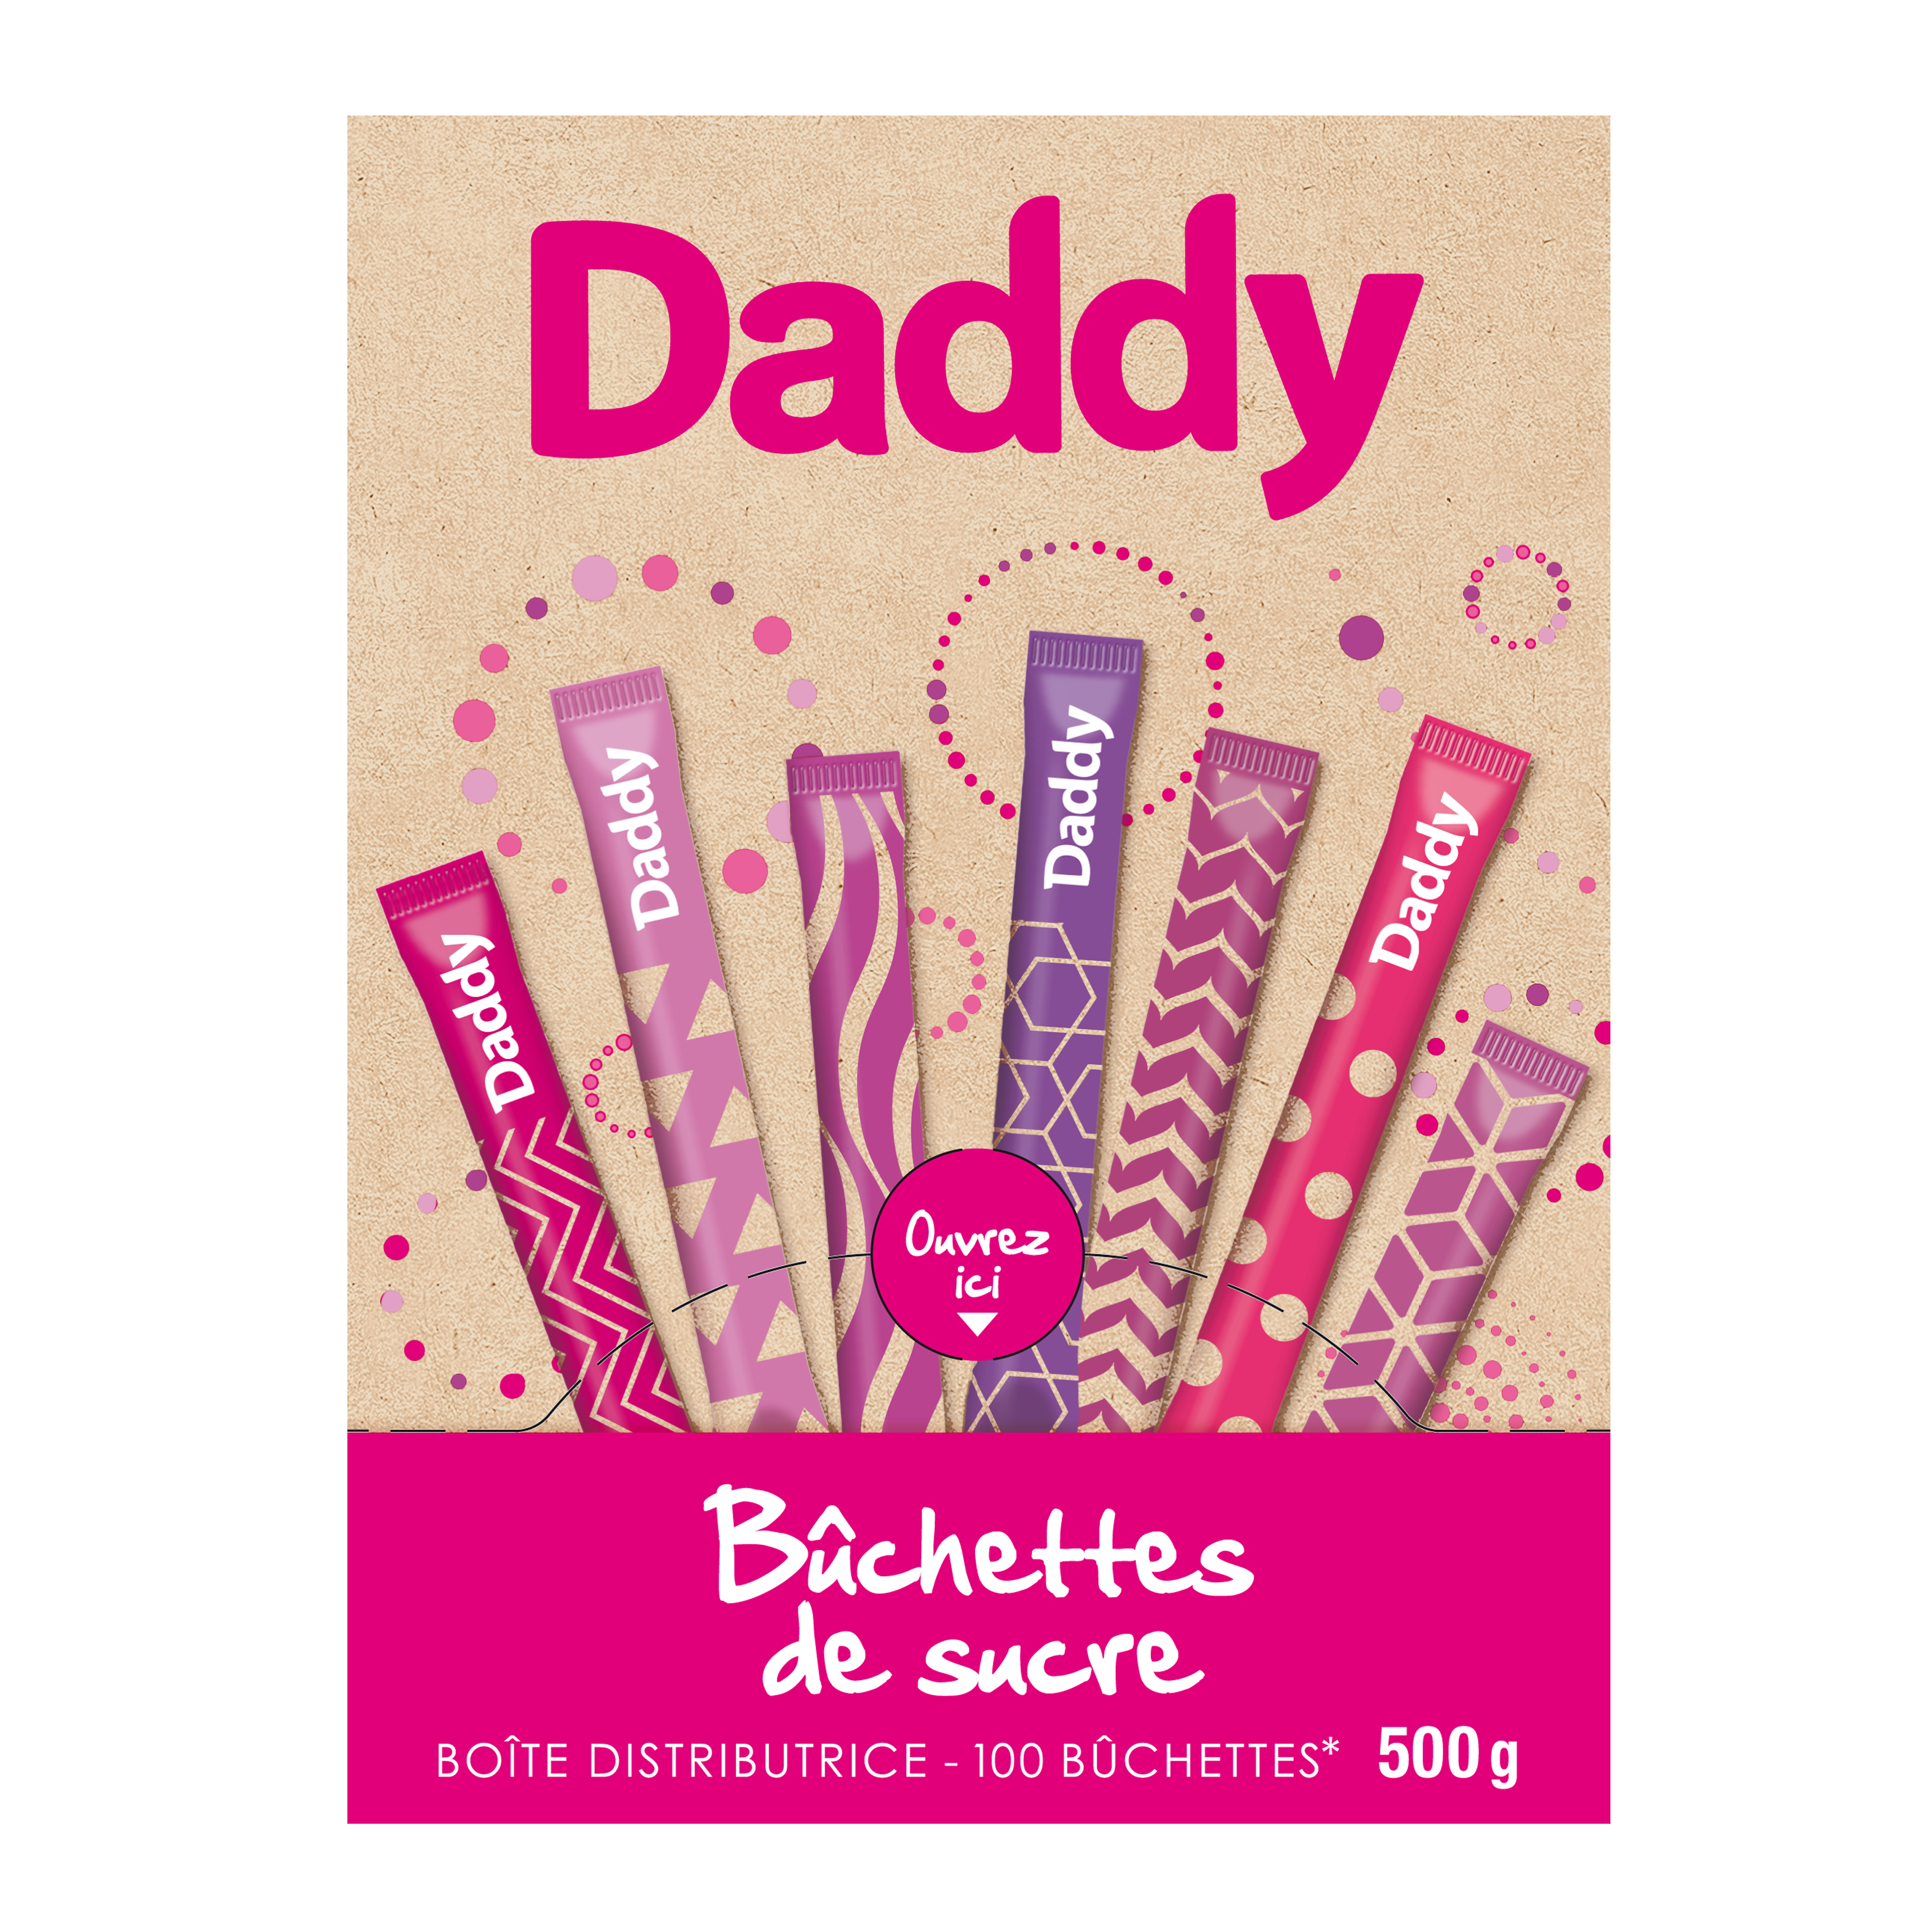 Daddy - Bûchettes de sucre (100 pièces)